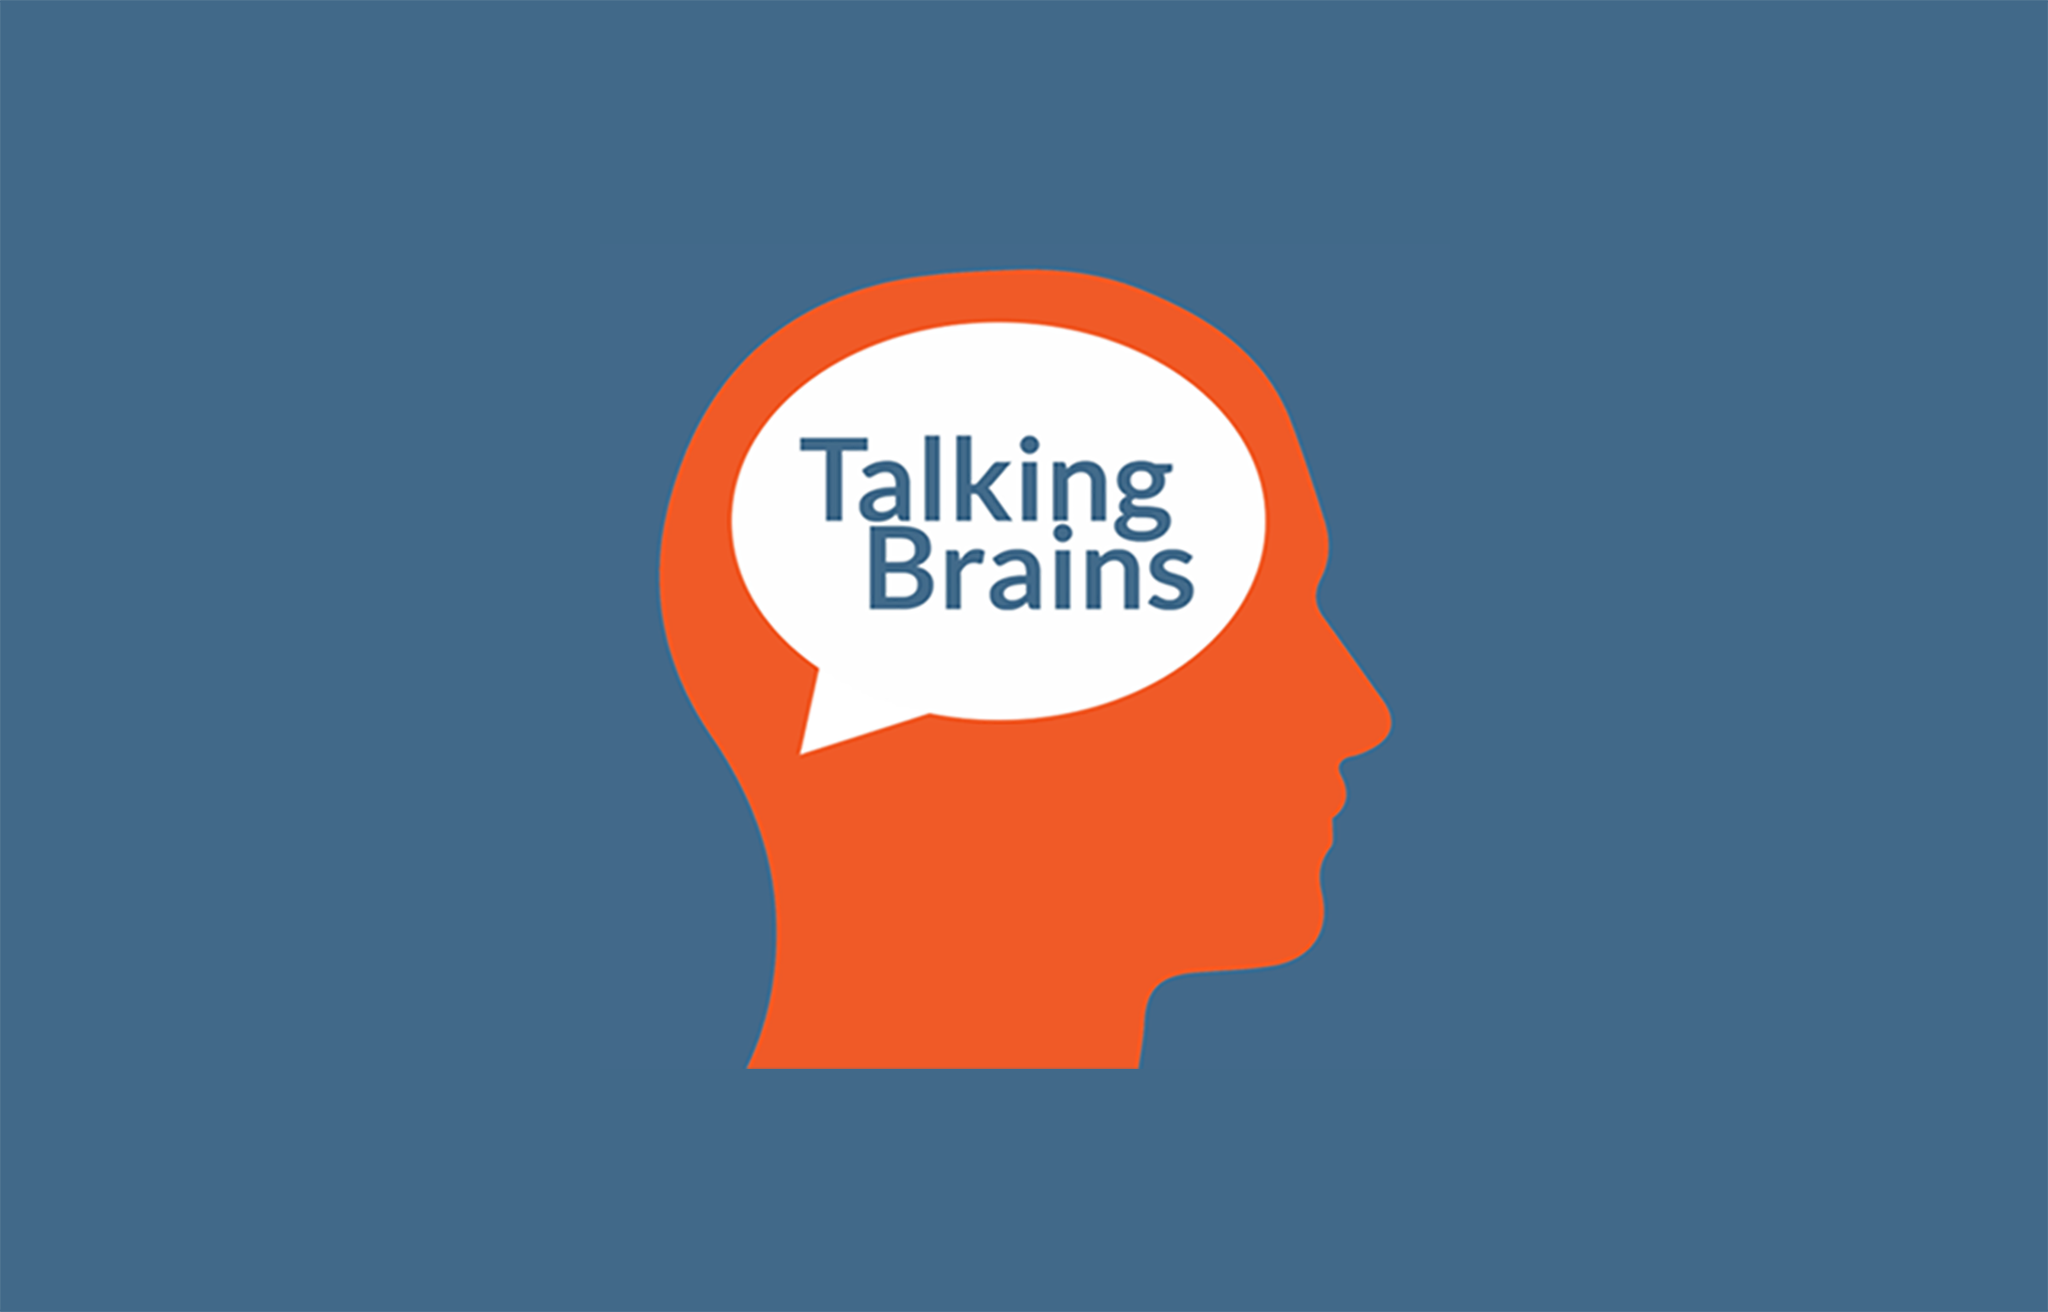 Brains talks